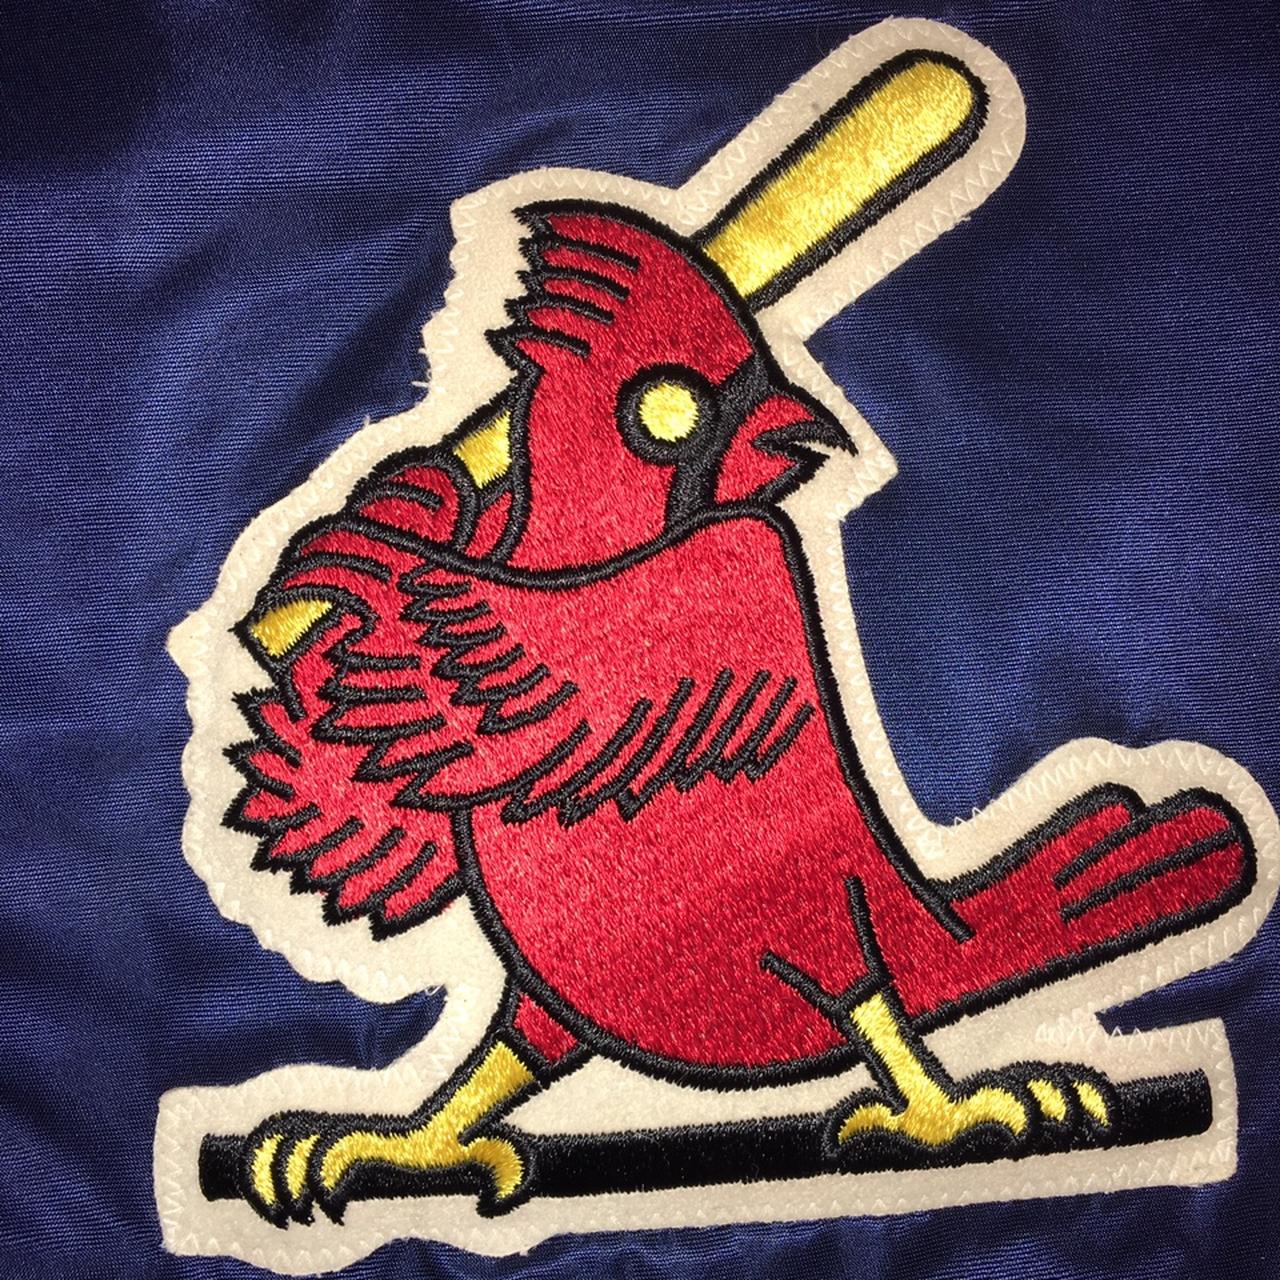 Vintage starter St Louis Cardinals Bomber jacket - Depop